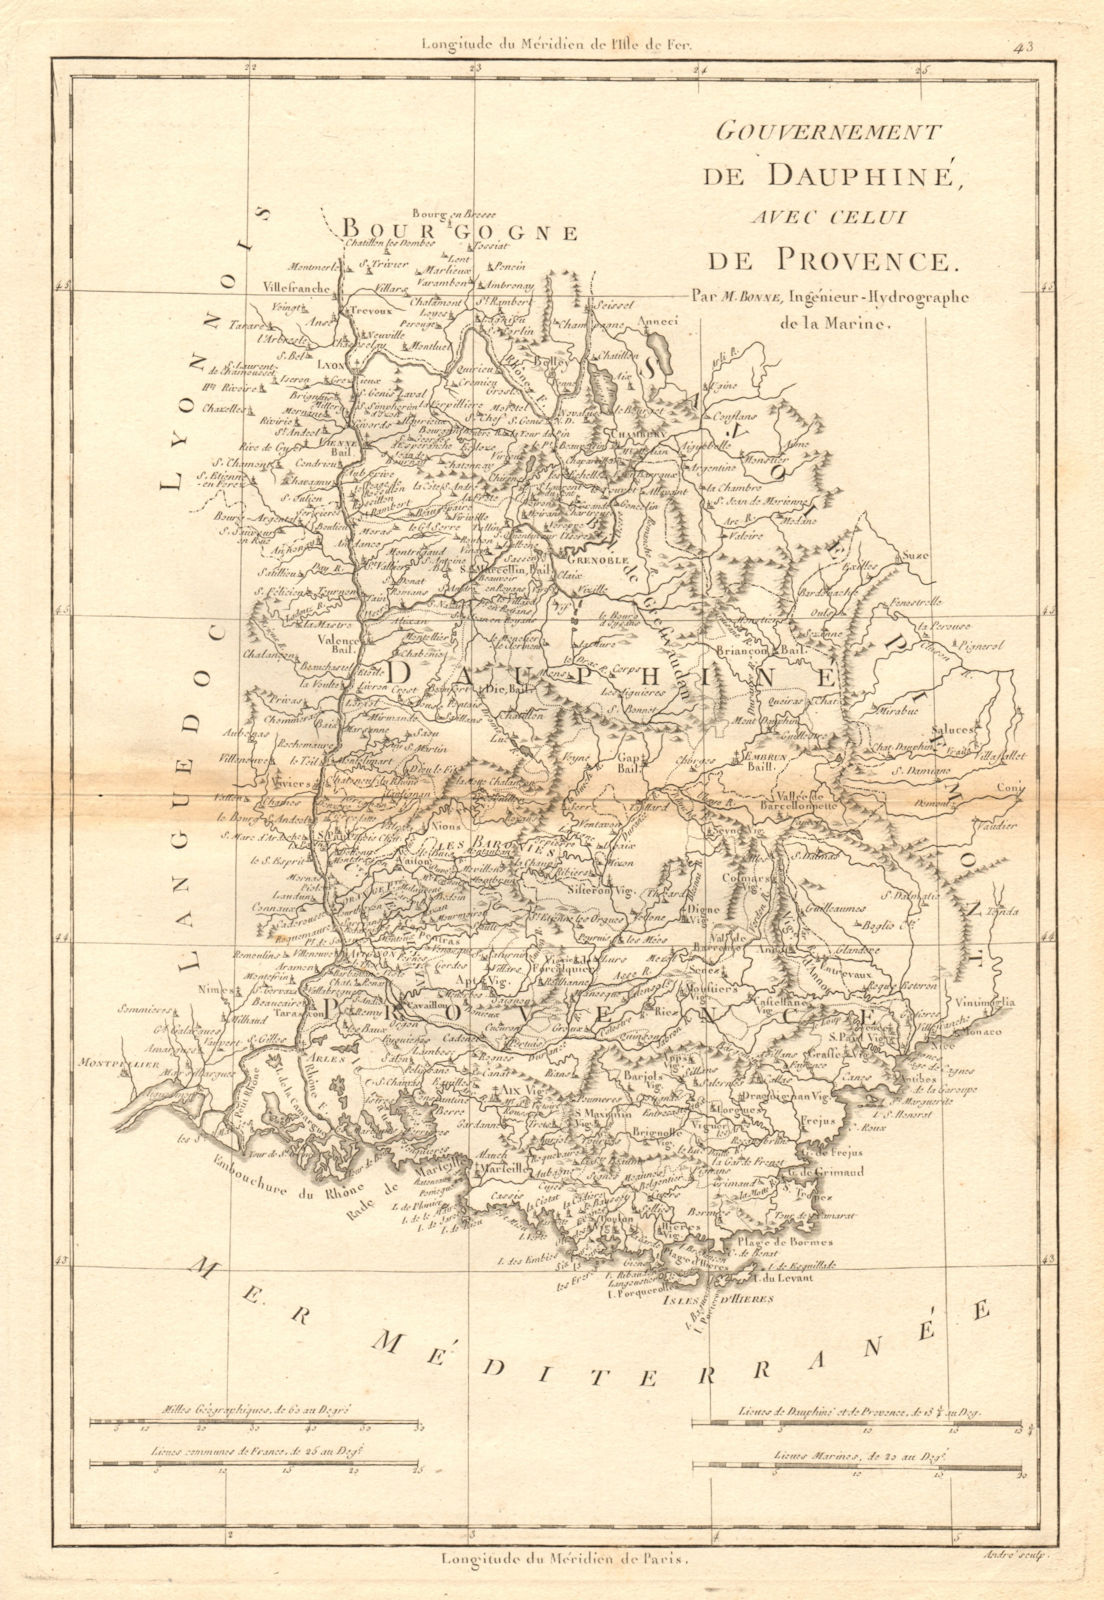 Associate Product Gouvernement de Dauphiné avec celui de Provence. Rhone Alpes. BONNE 1787 map